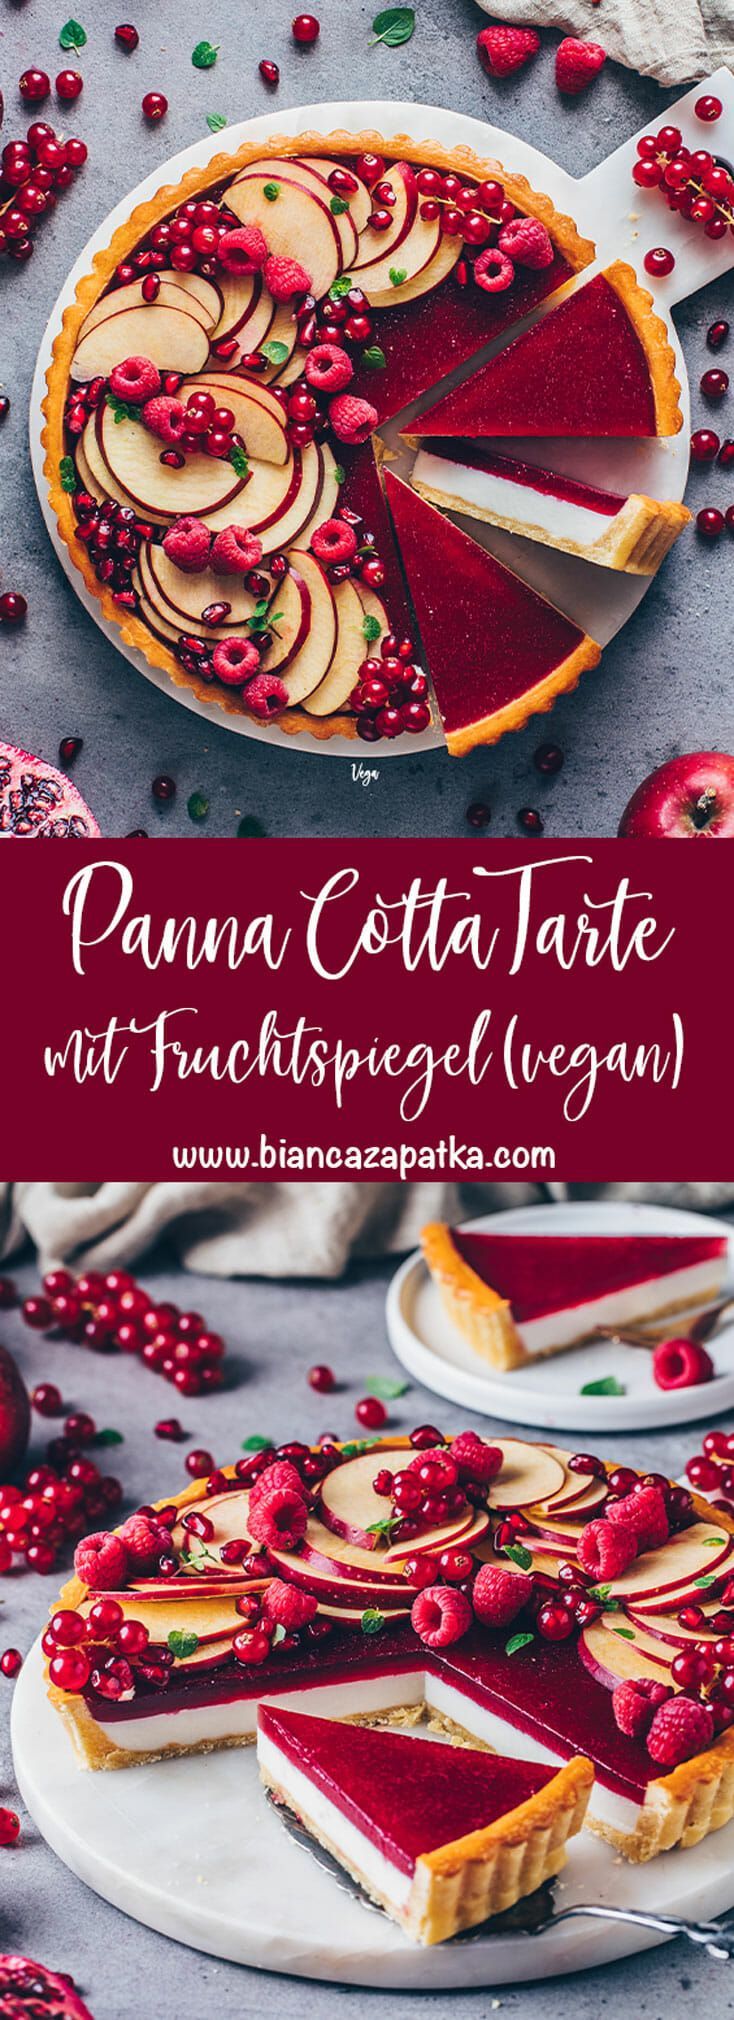 Panna Cotta Tarte mit M?rbeteig und Fruchtspiegel -   17 desserts Vegan noel ideas